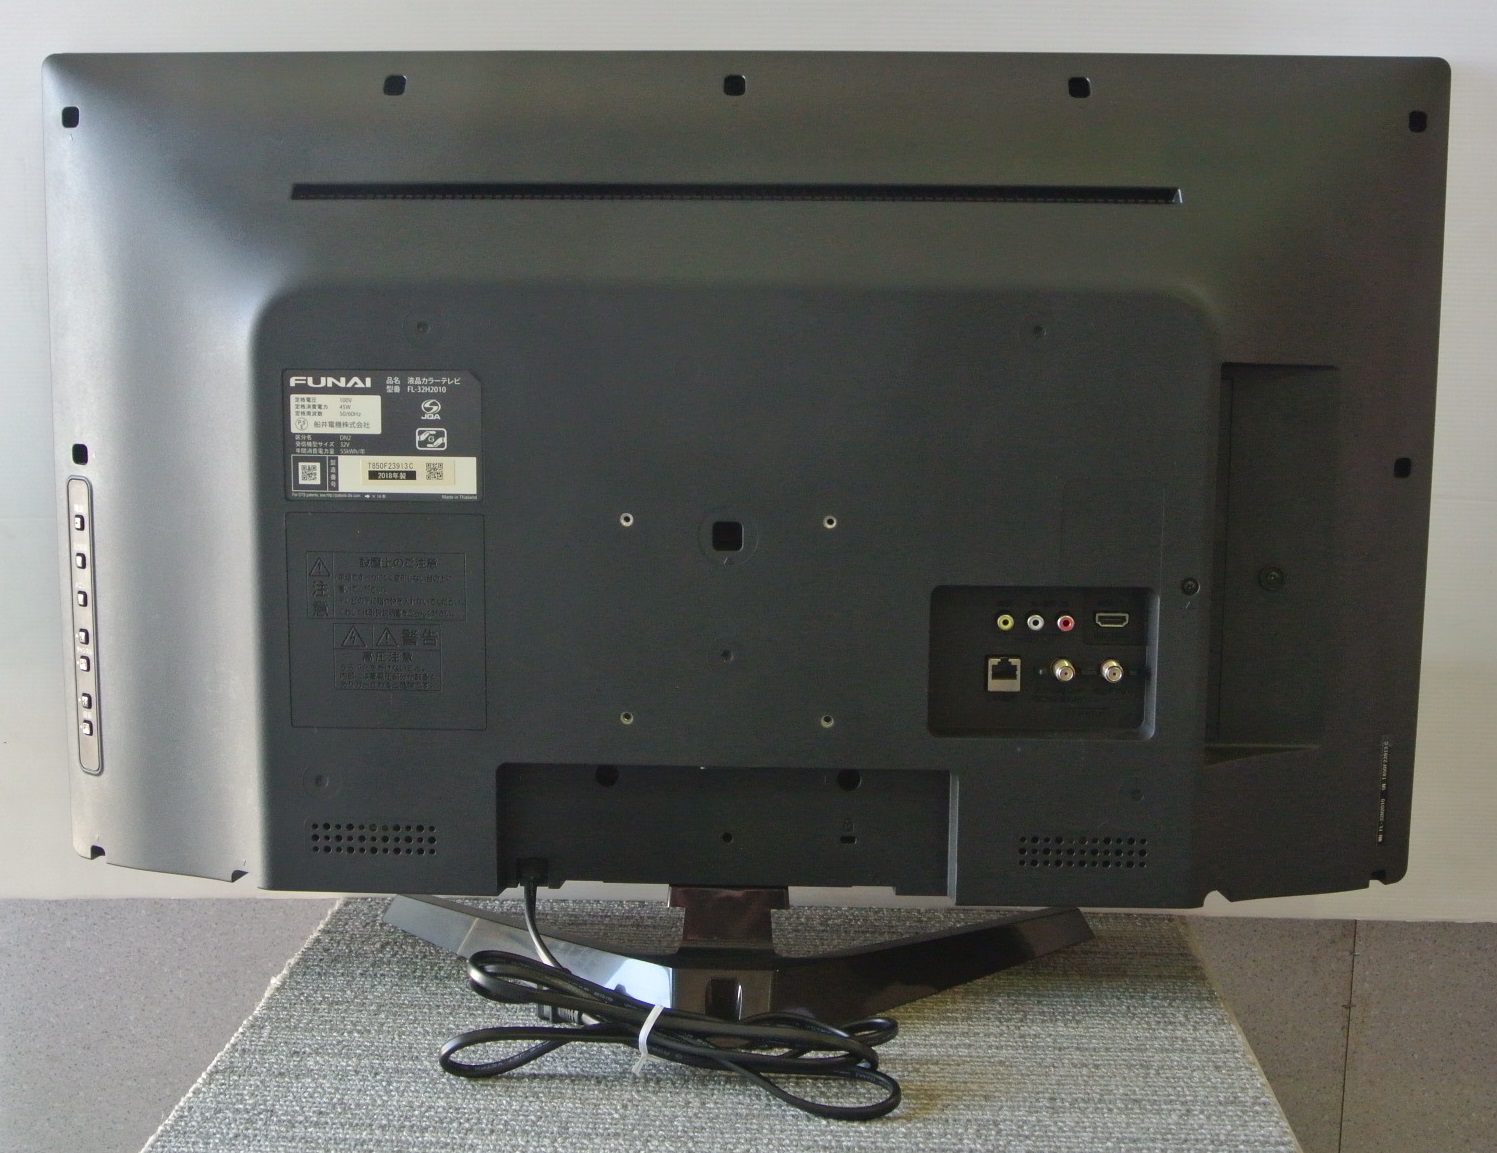 裏番組の録画もOK♪ FUNAI（フナイ電機） 500GB・HDD内蔵 32V型ハイビジョン液晶テレビ FL-32H2010 群馬県伊勢崎市リサイクルセンターふれんど | 群馬のリサイクル